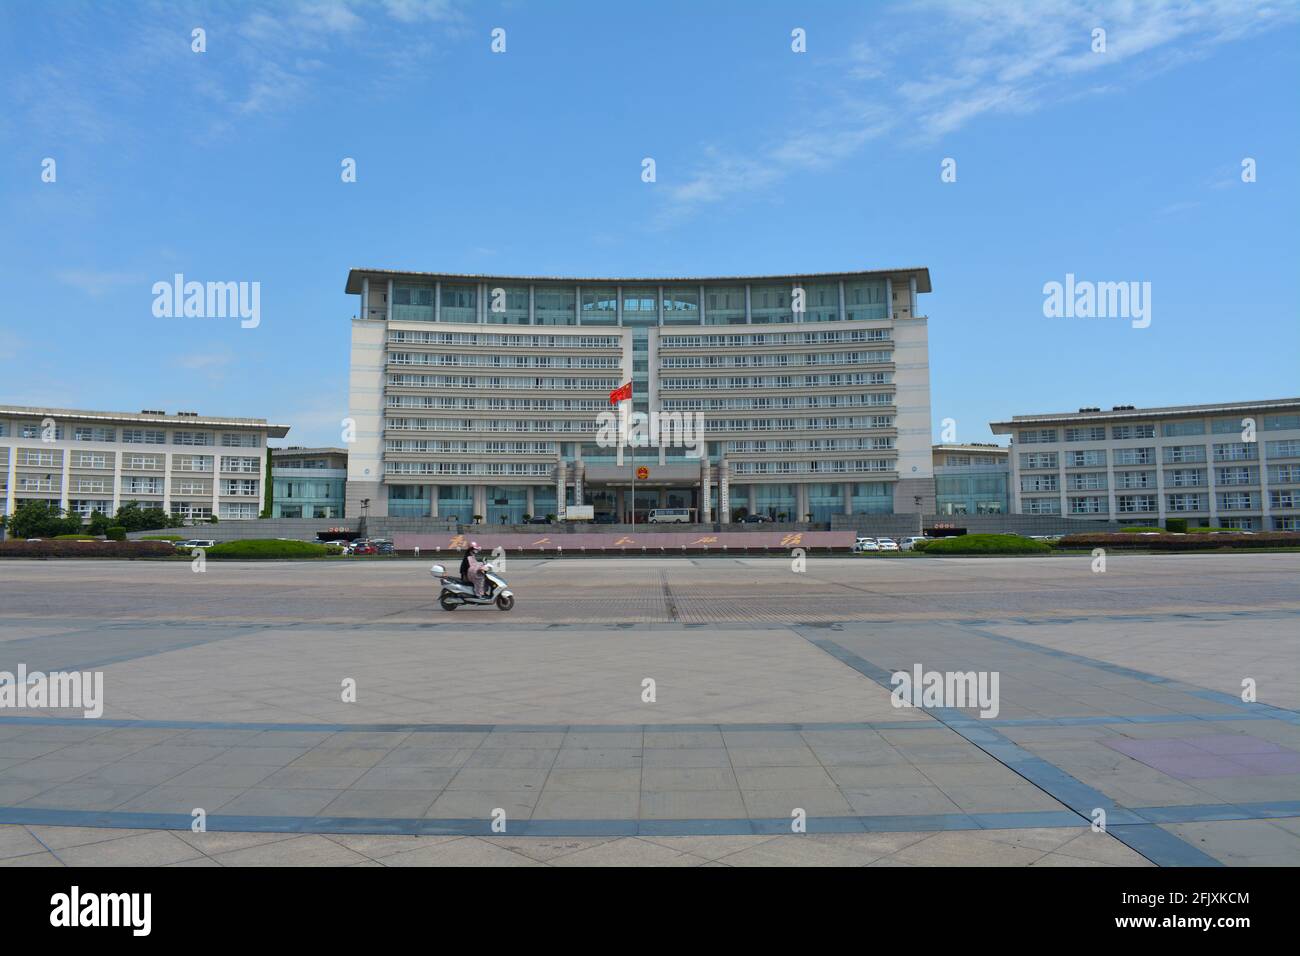 Façade et bâtiment principal du gouvernement populaire de Jiaxing. Bureaux locaux et nationaux. Banque D'Images